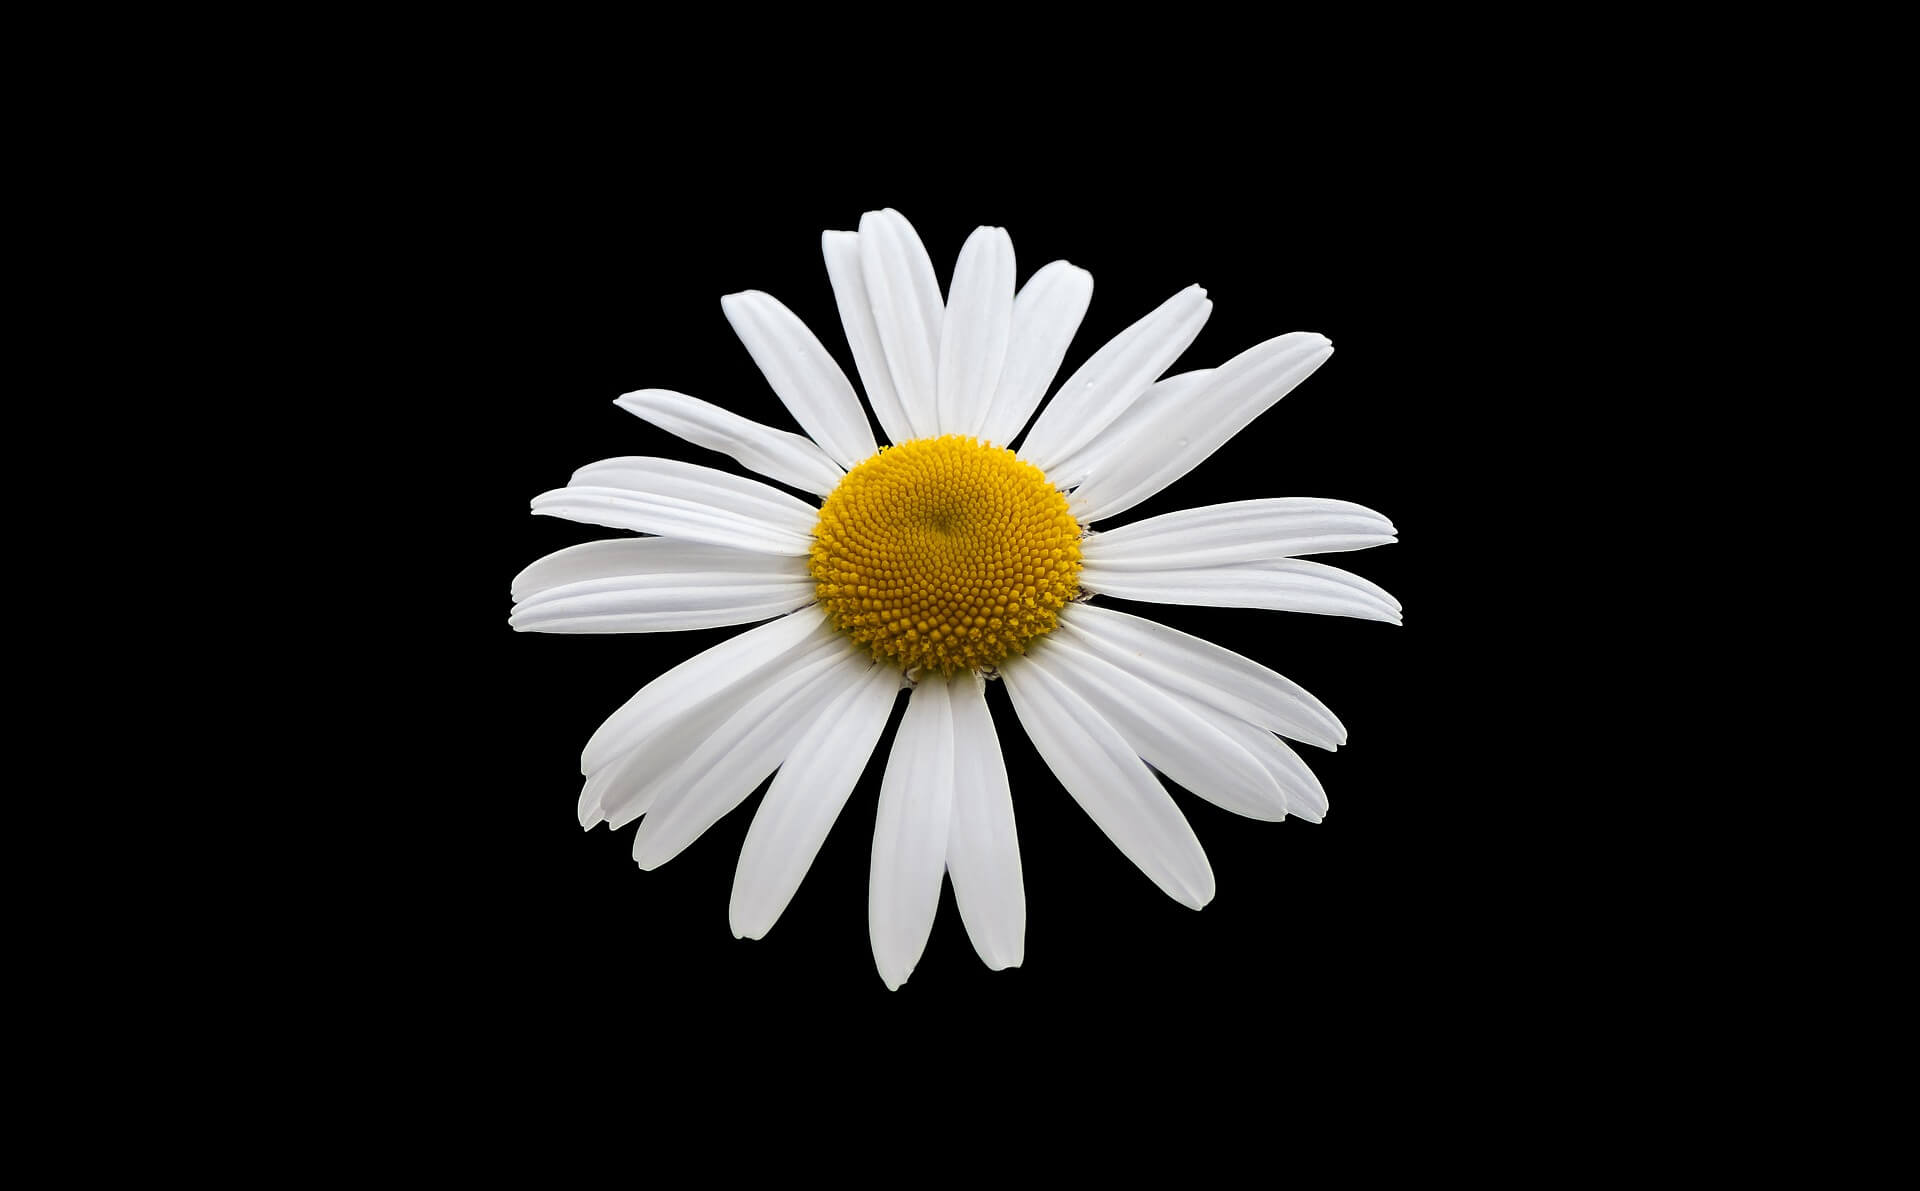 Hình nền hoa cúc trắng nền đen đẹp chất